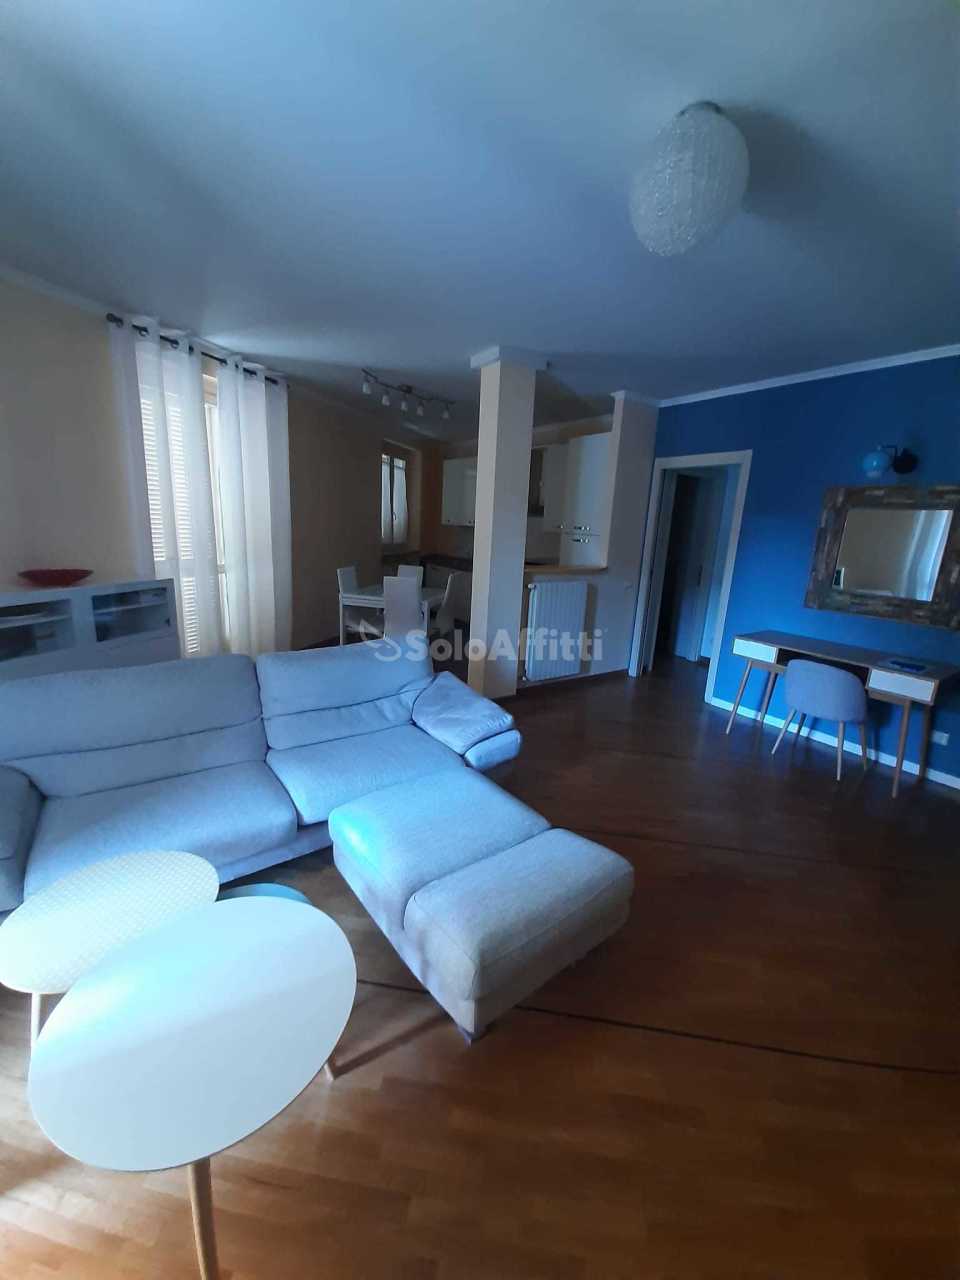 Appartamento in affitto a Vigevano, 3 locali, prezzo € 800 | PortaleAgenzieImmobiliari.it